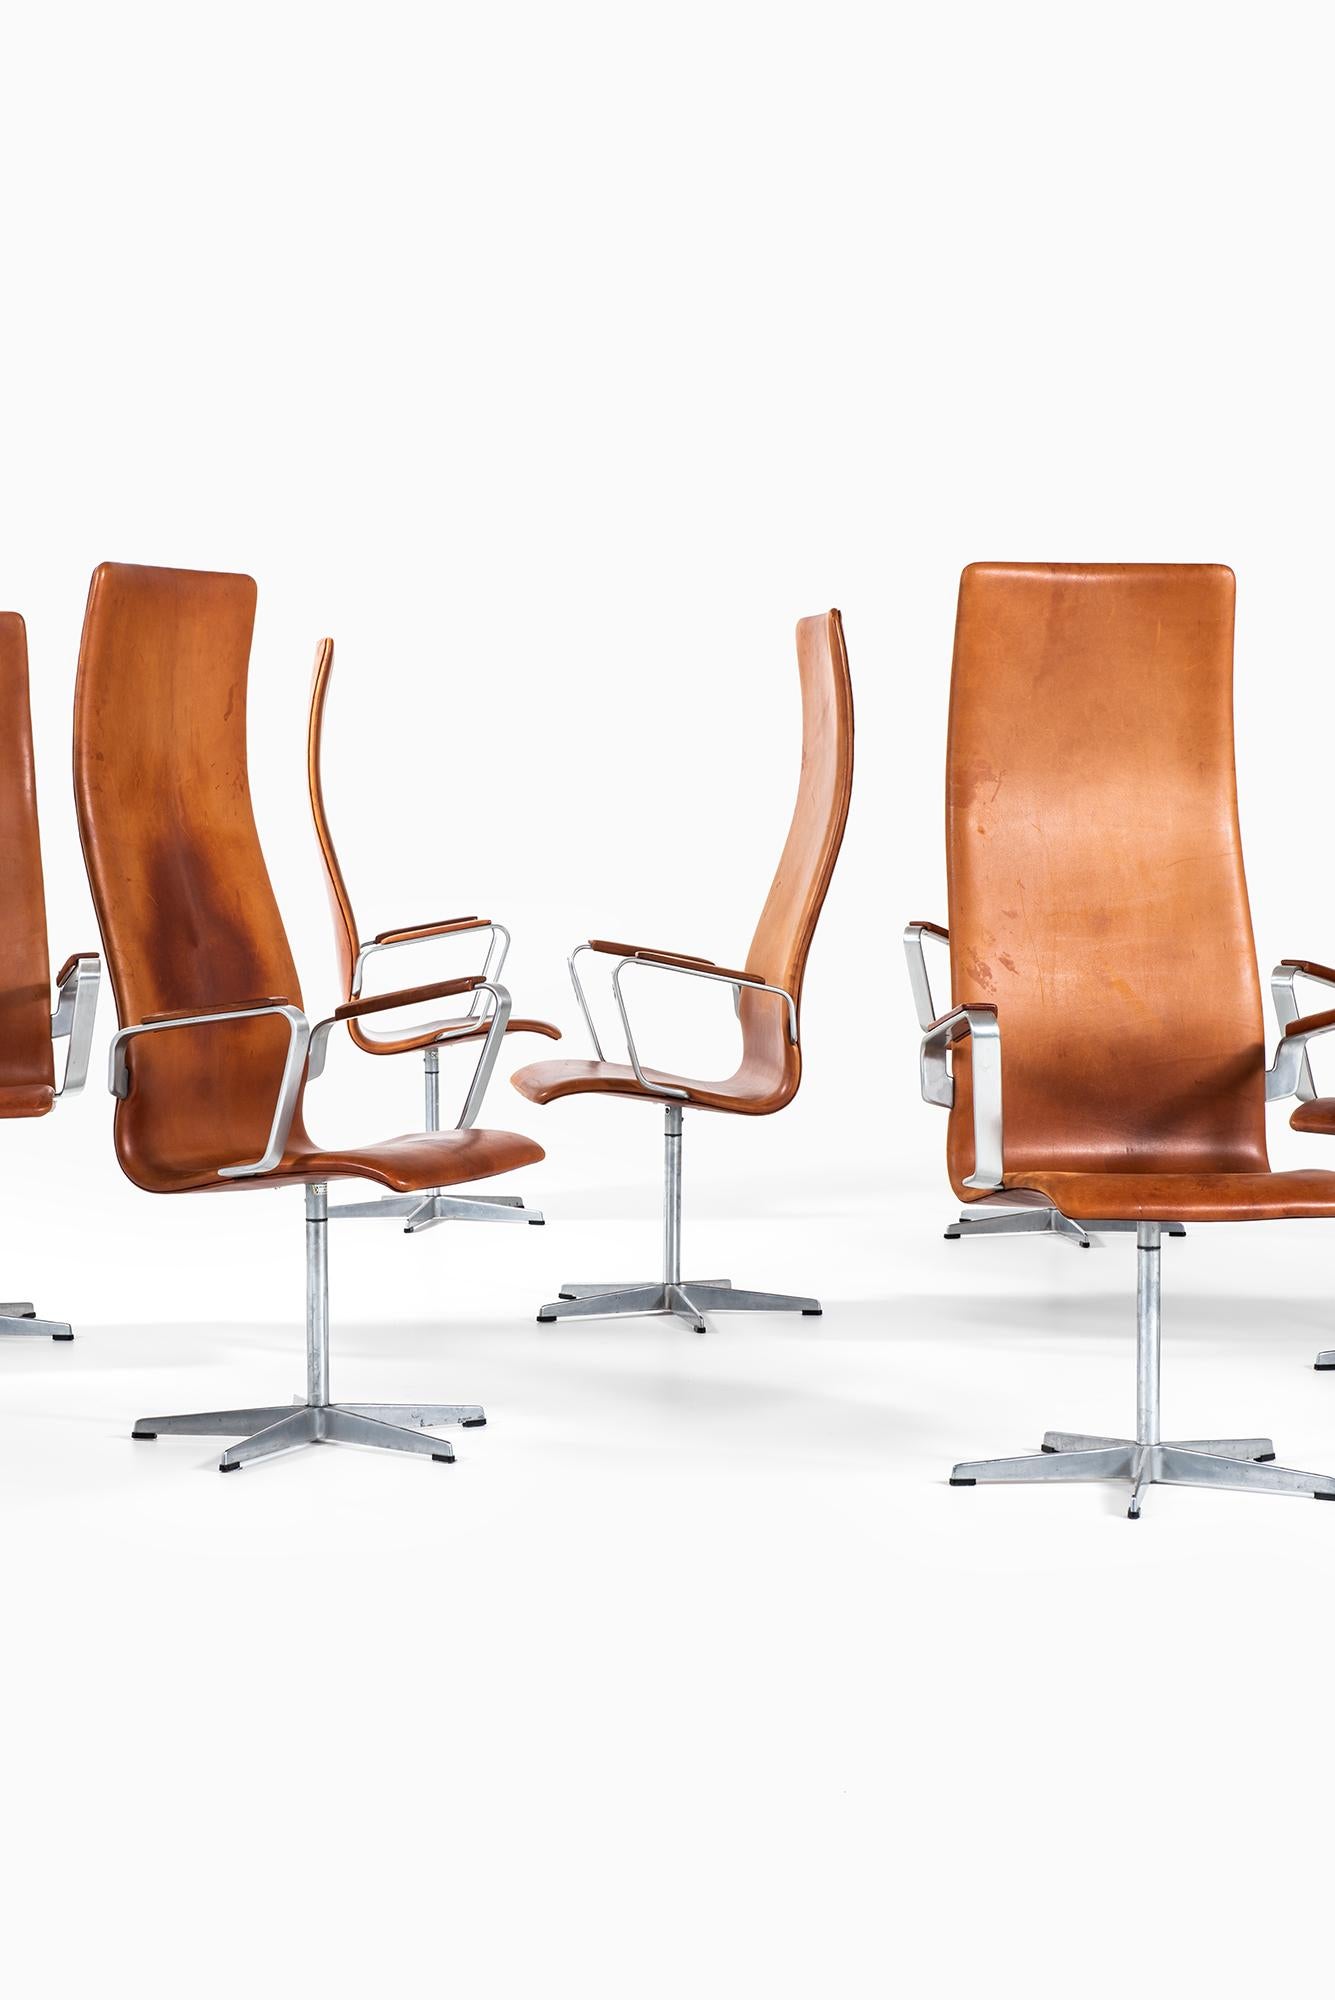 Seltener Satz Oxford-Stühle mit hoher Rückenlehne, Modell 3272, entworfen von Arne Jacobsen. Produziert von Fritz Hansen in Dänemark.